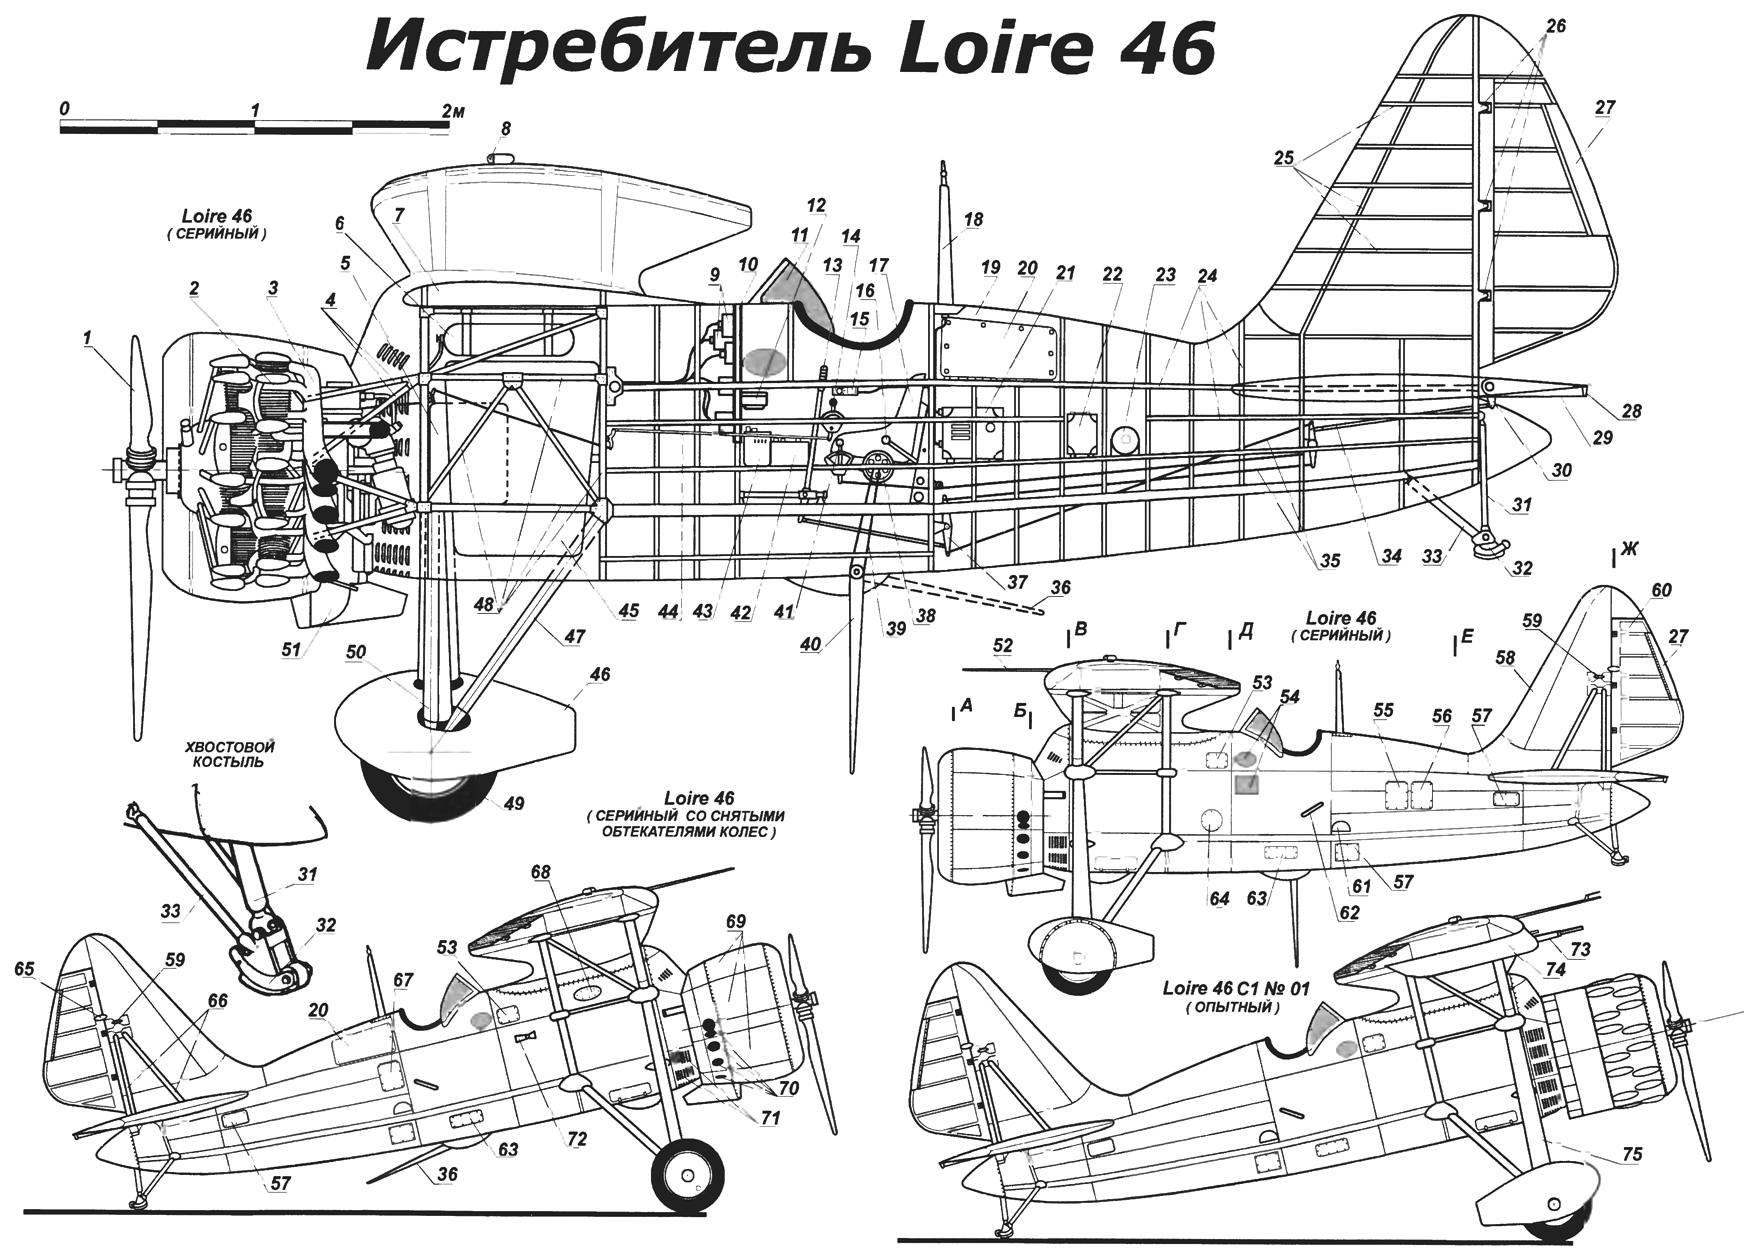 Одноместный подкосный истребитель-моноплан Loire 46